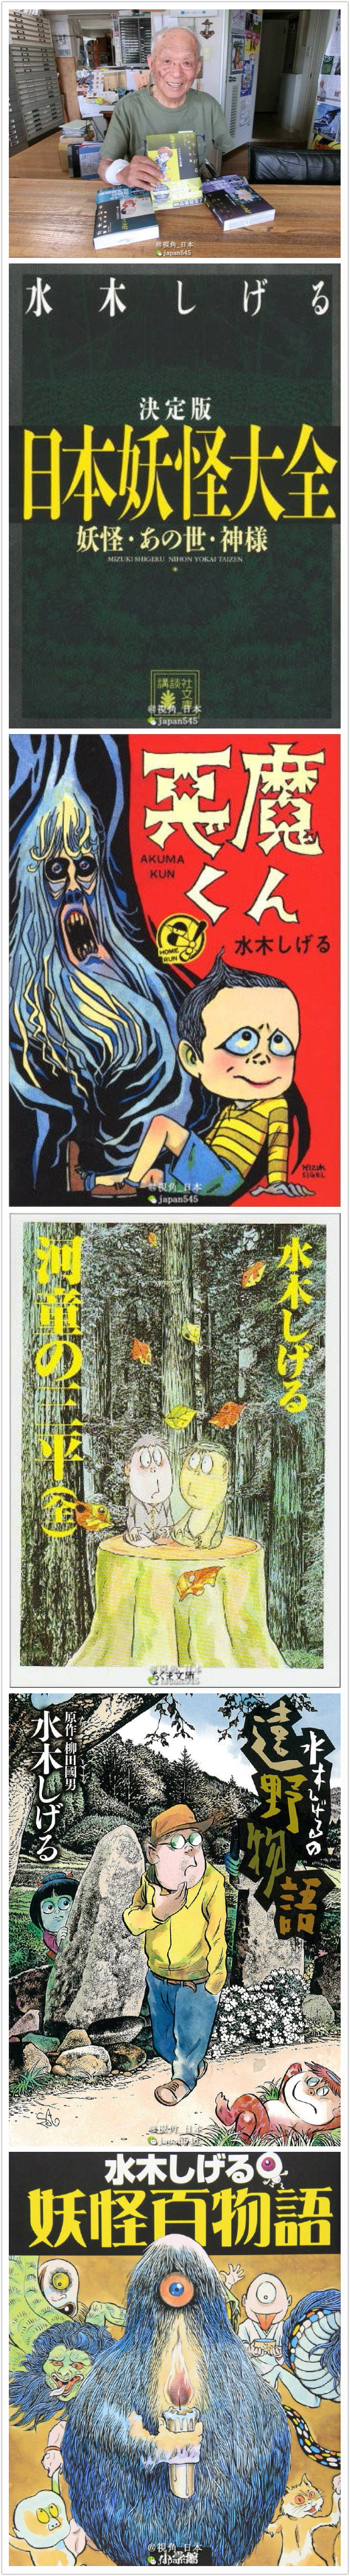 人物：日本著名漫画家水木しげる（水木茂，本名：武良茂）于11月30日因为心脏衰竭在东京都内的医院去世，享年93岁。水木茂出生于鸟取县，他的代表作品包括「ゲゲゲの鬼太郎」、「河童の三平」、「悪魔くん」等，被誉为日本妖怪漫画第一个人。